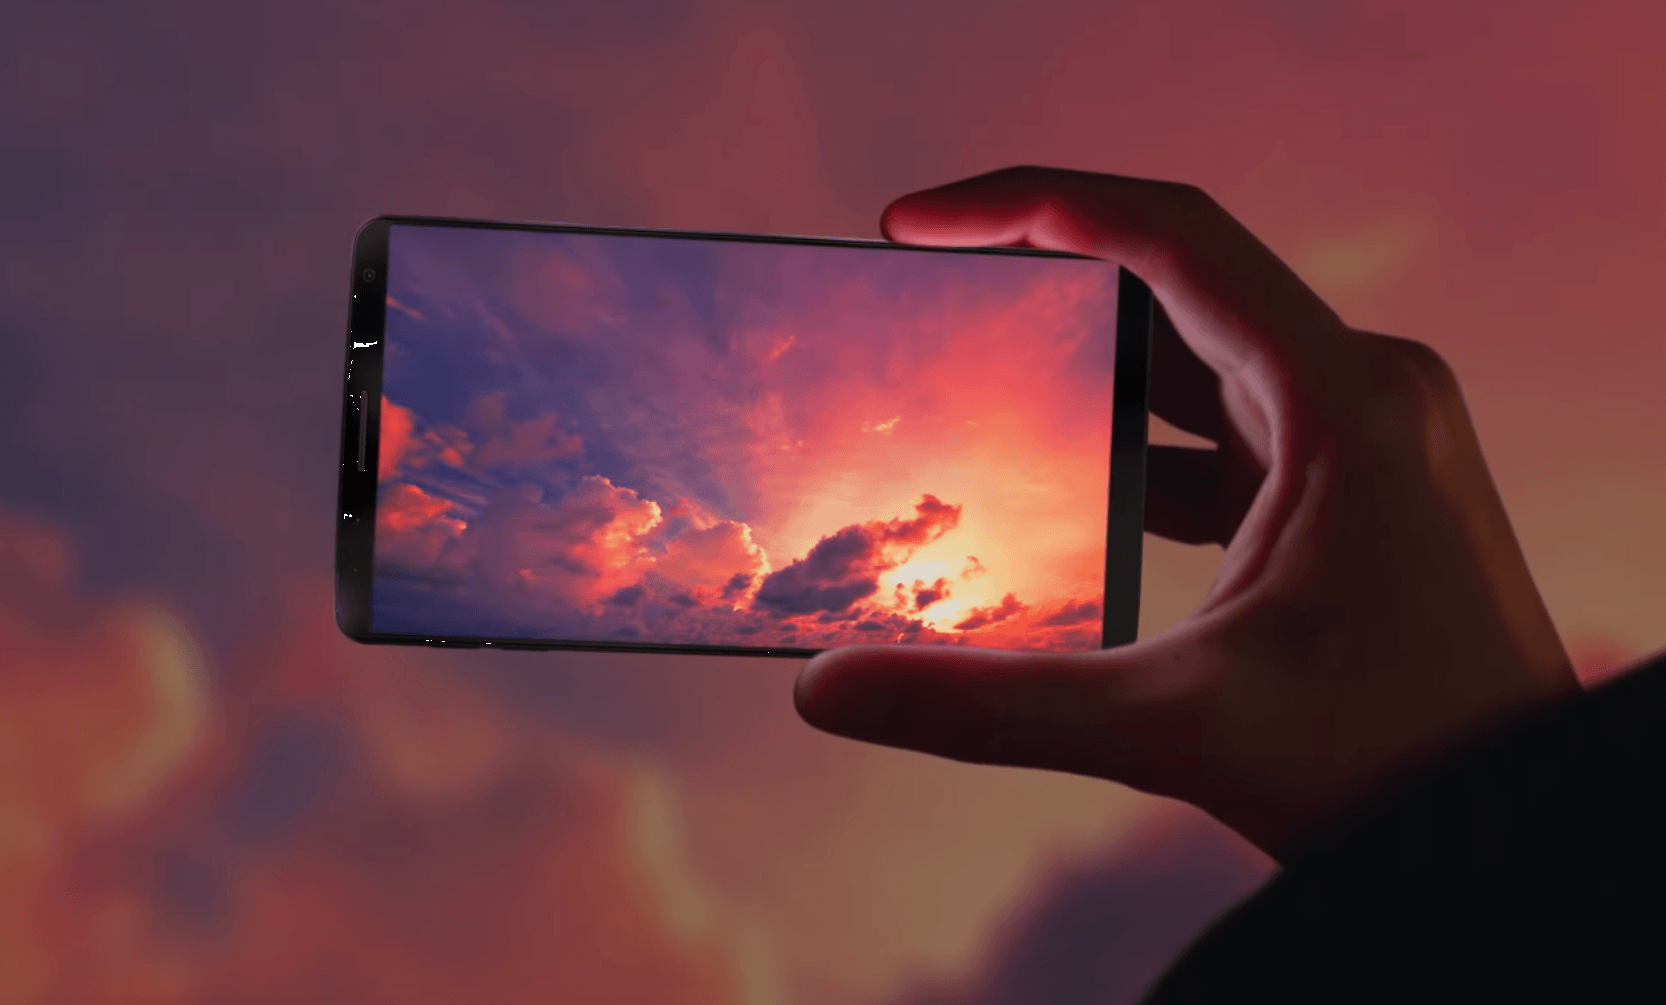 Galaxy Tab S8, S8+, S8 Ultra : une grosse fuite dévoile les